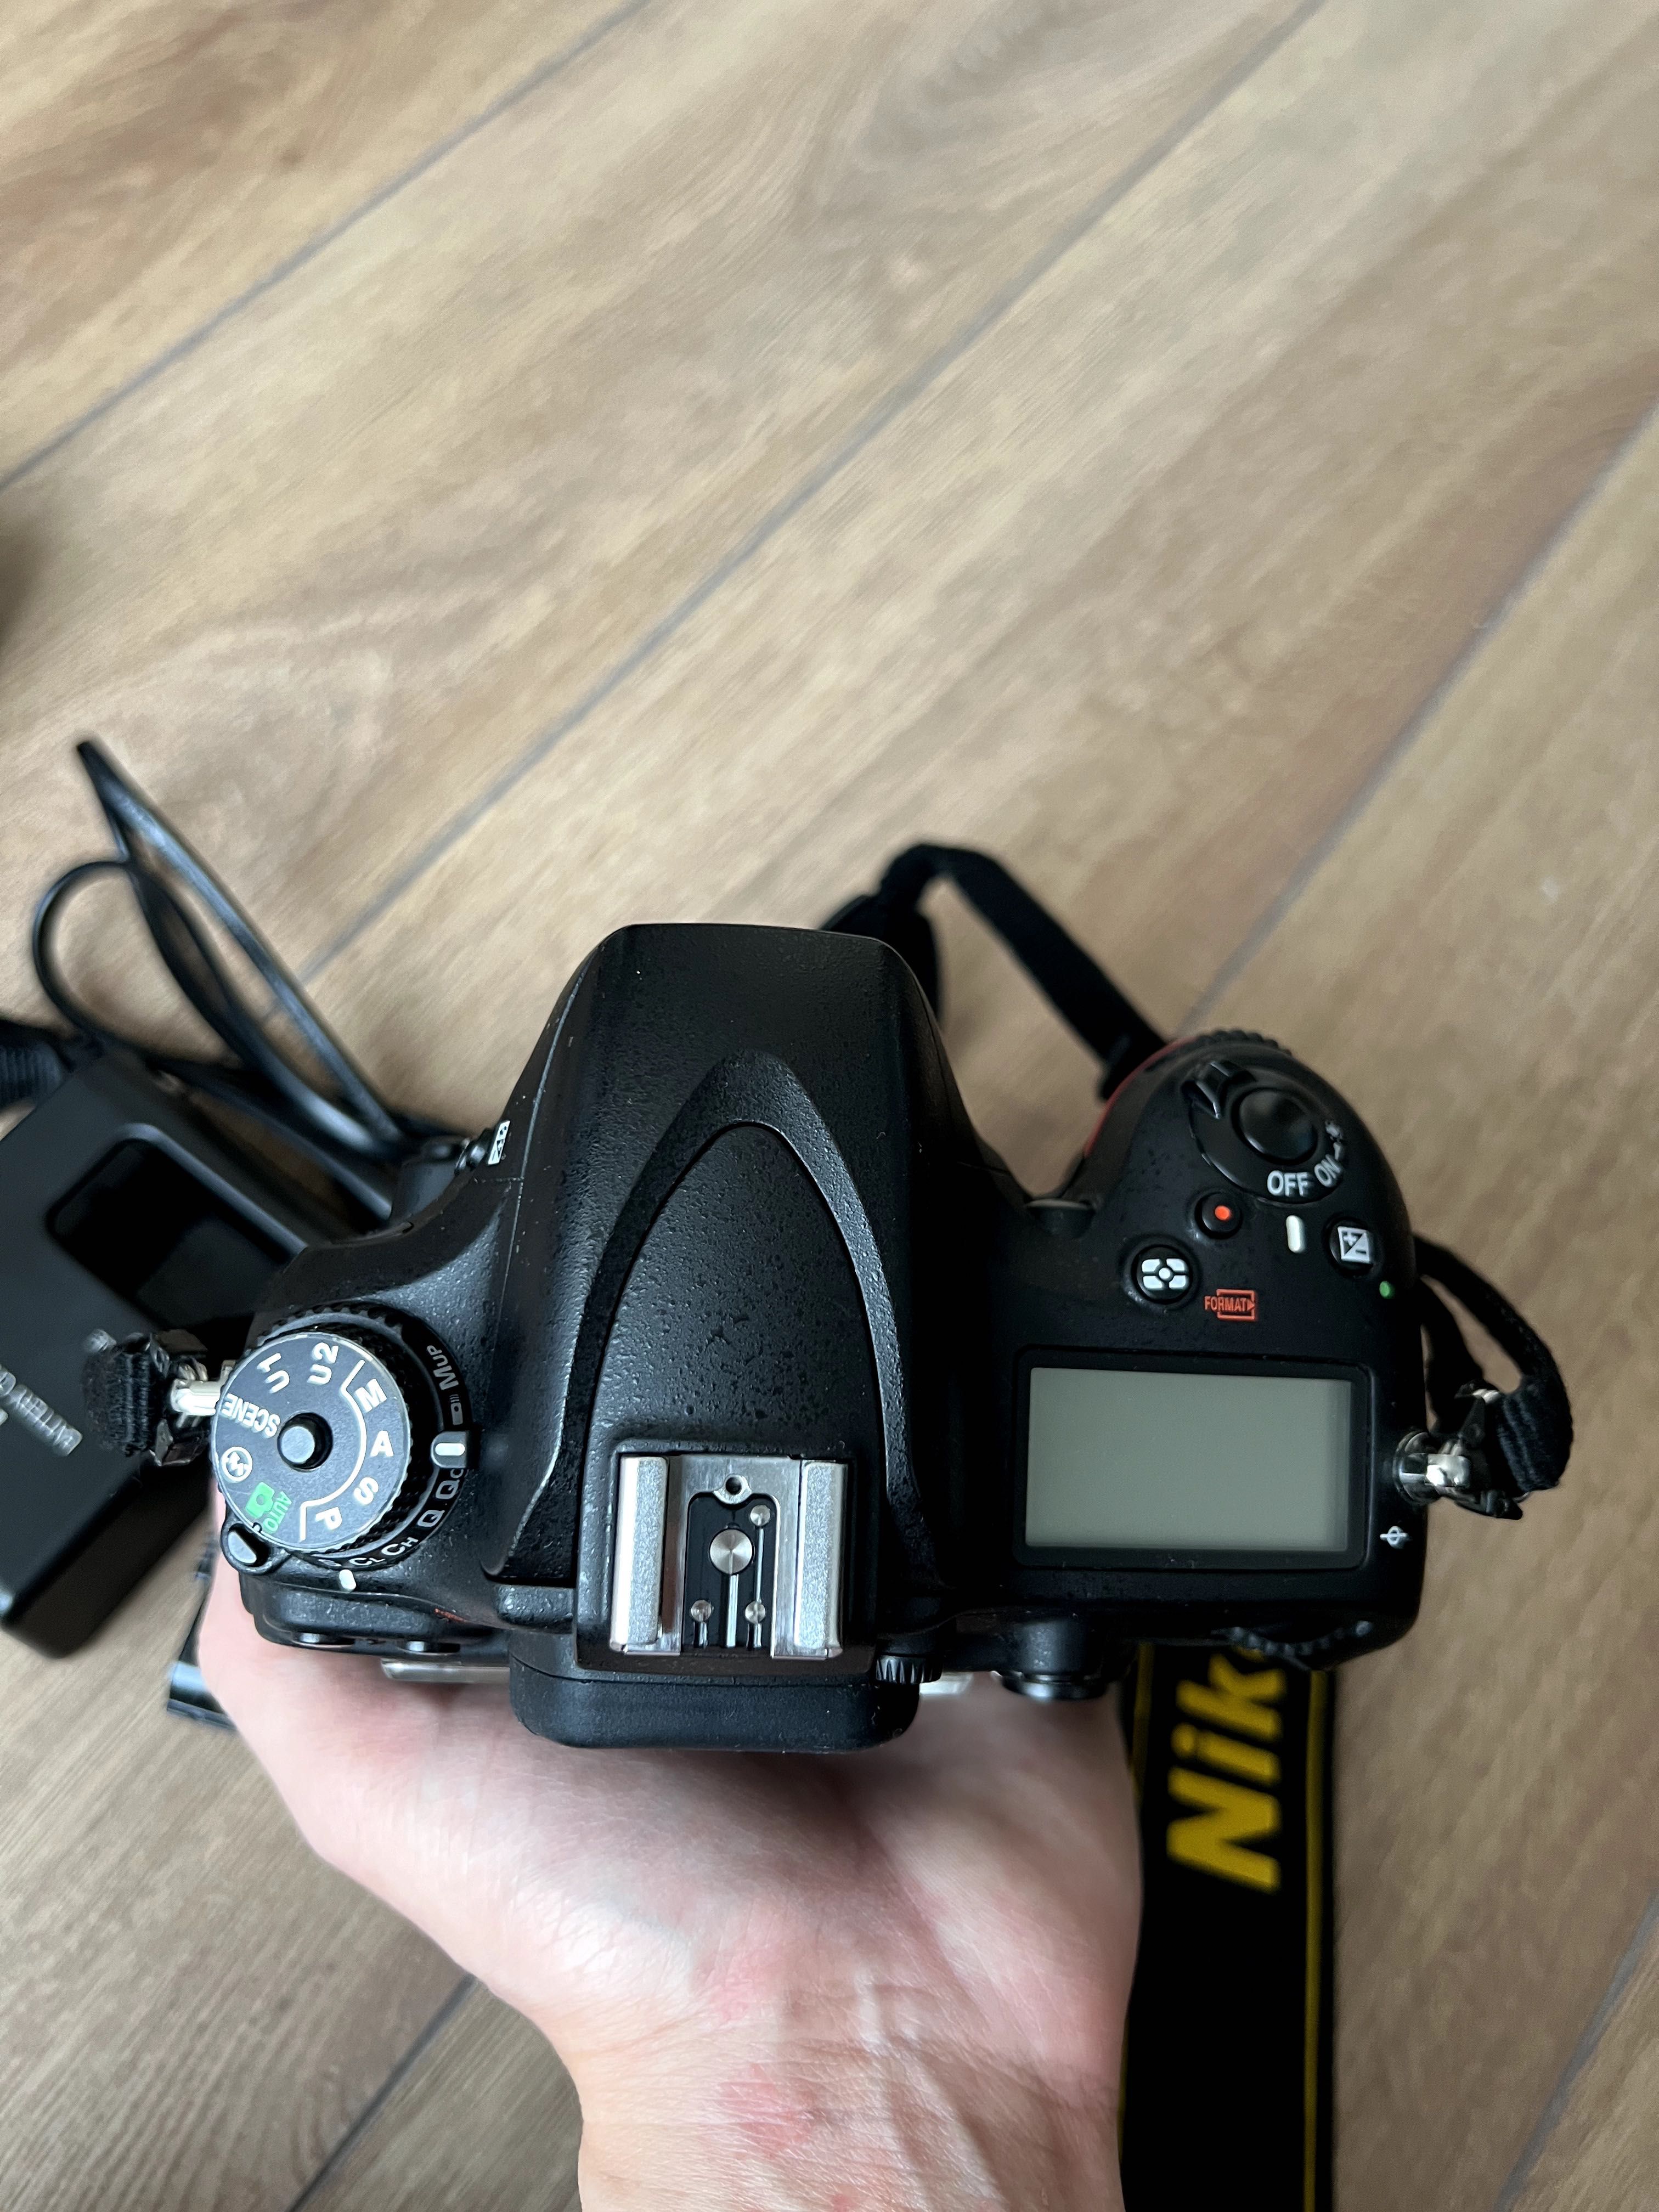 Body aparat foto DSLR Nikon D610 cauciucuri noi, 14k shutter count